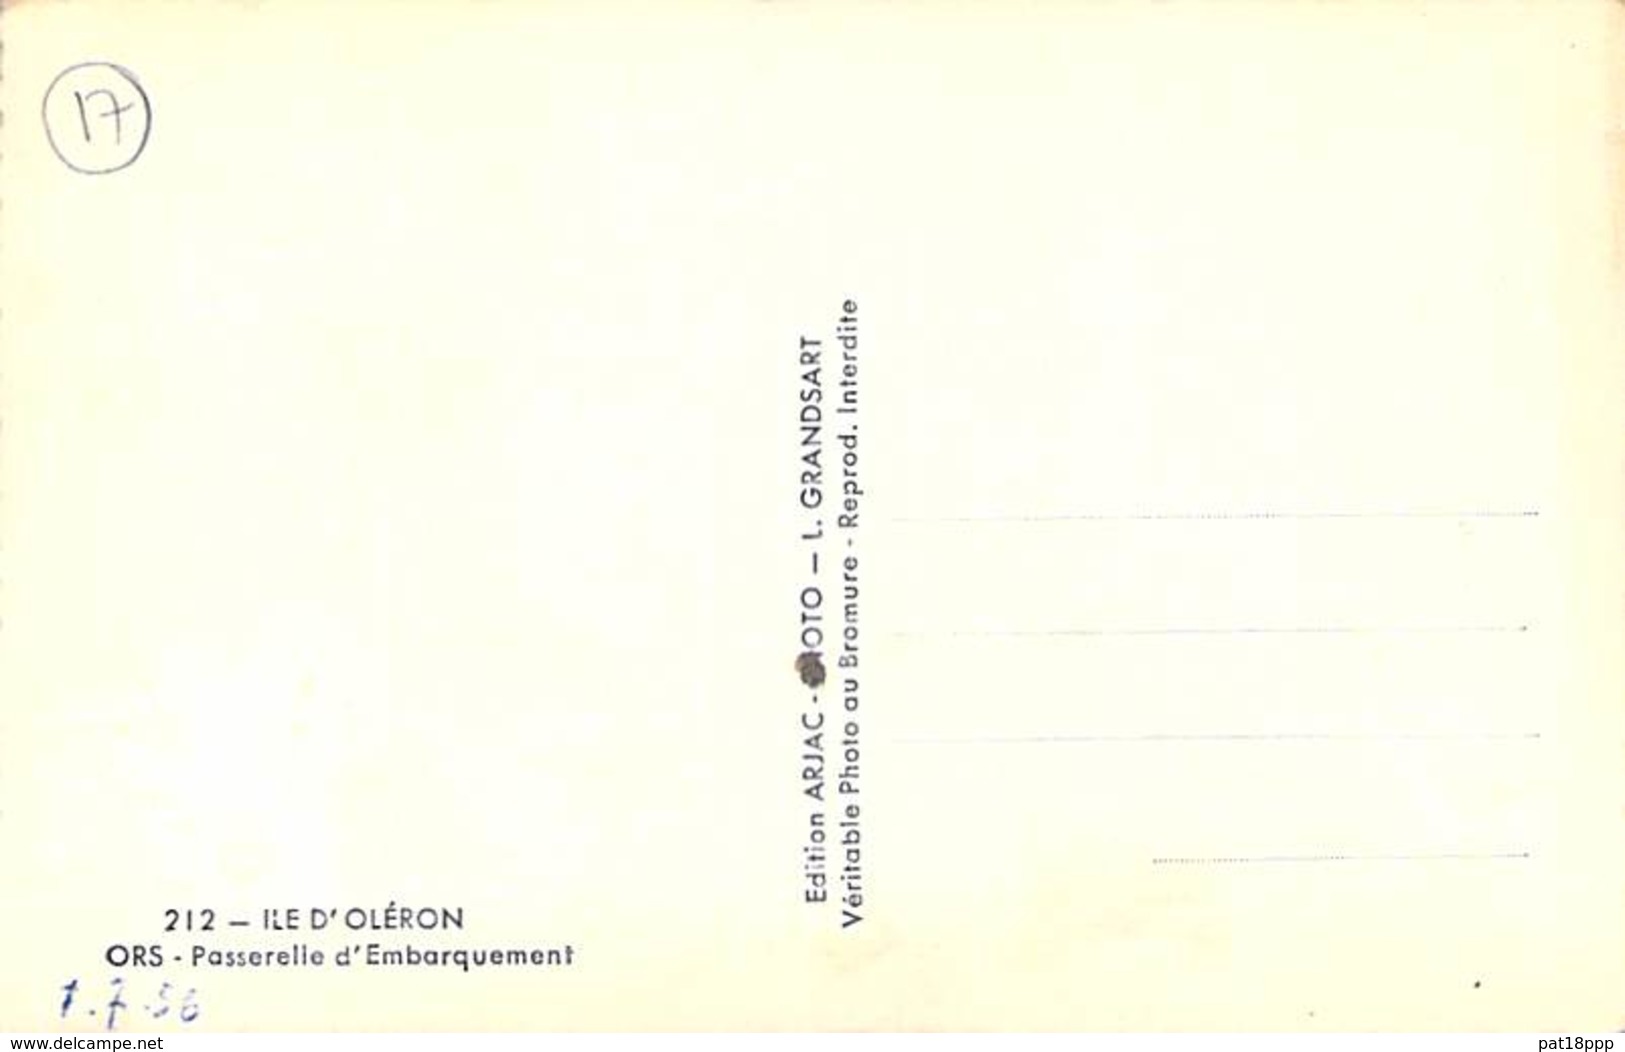 ** Lot de 10 cartes ** 17 - ILE D'OLERON : Cartes diversifiées - CPSM dentelée noir blanc format CPA - Charente Maritime